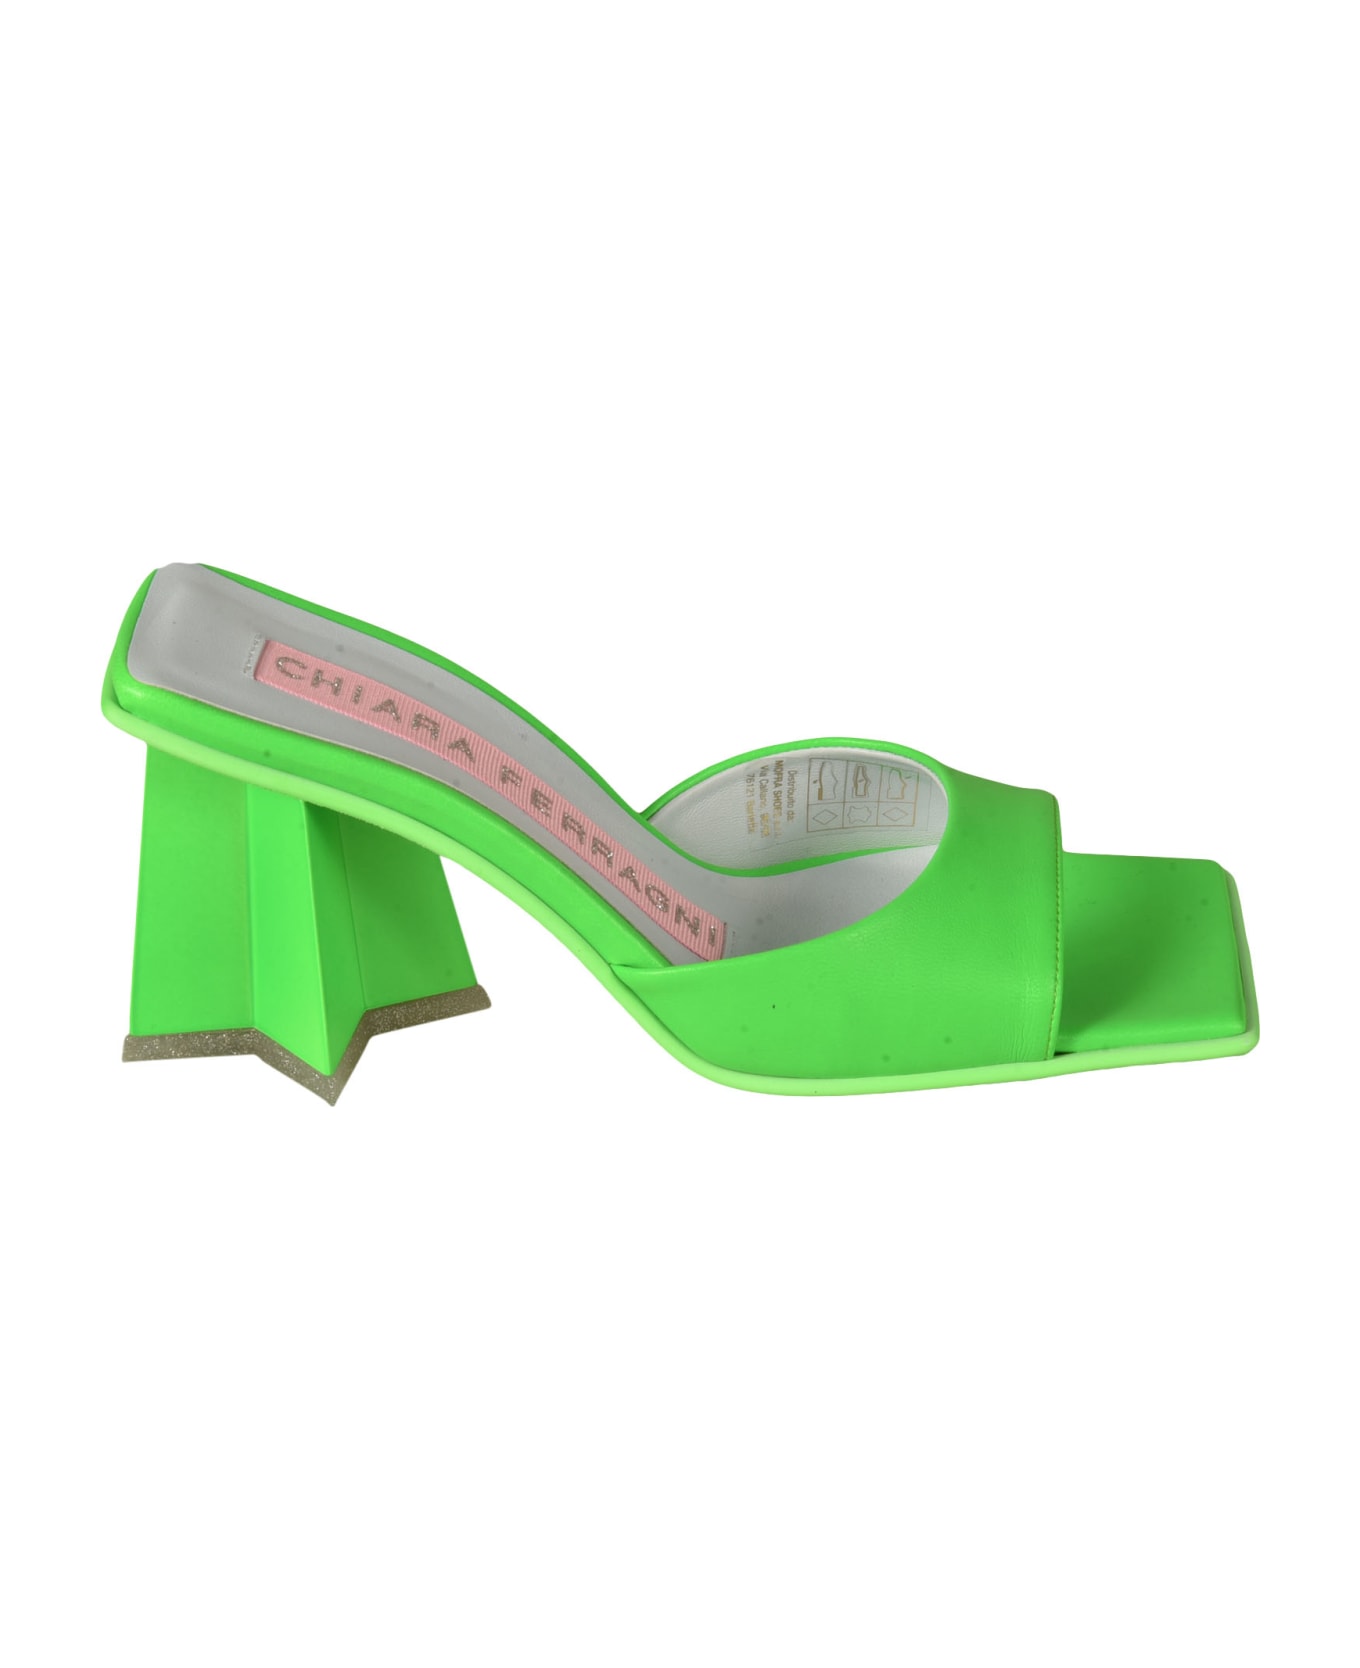 Chiara Ferragni Star Heel 85 Mules - Bright Green